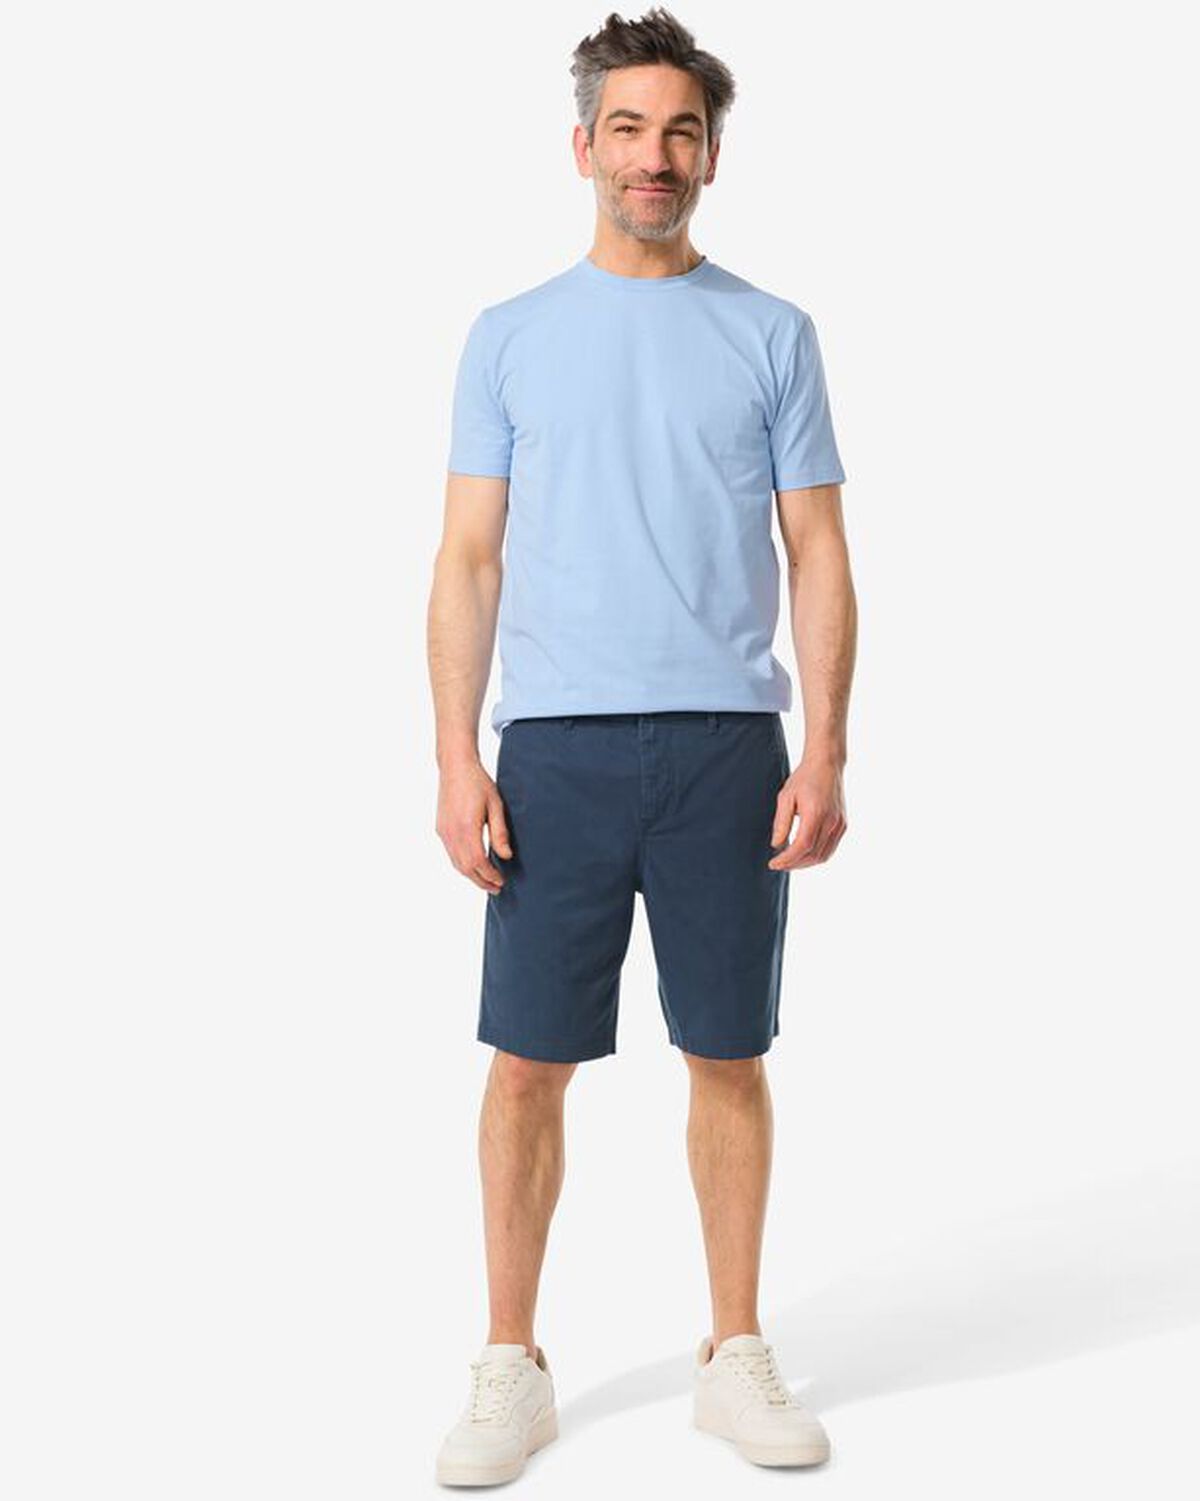 Shorts mit T-shirt blau - 201089.0 - HEMA